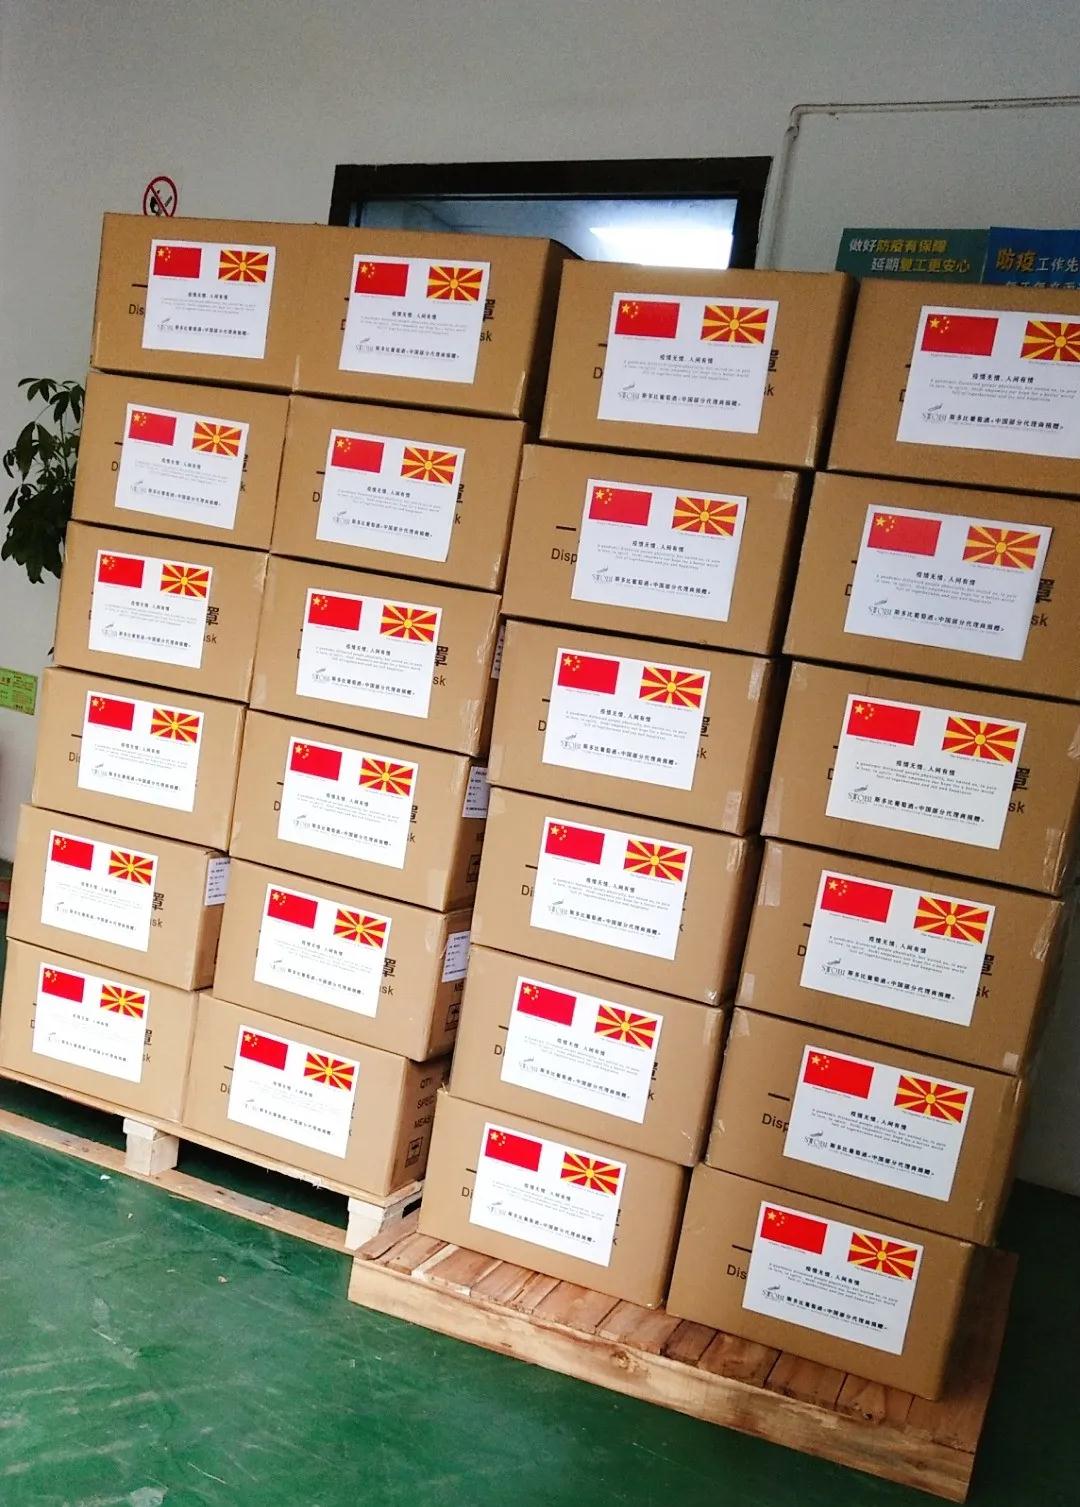 山川异域，风月同天，斯多比中国代理商捐赠北马其顿抗疫物资